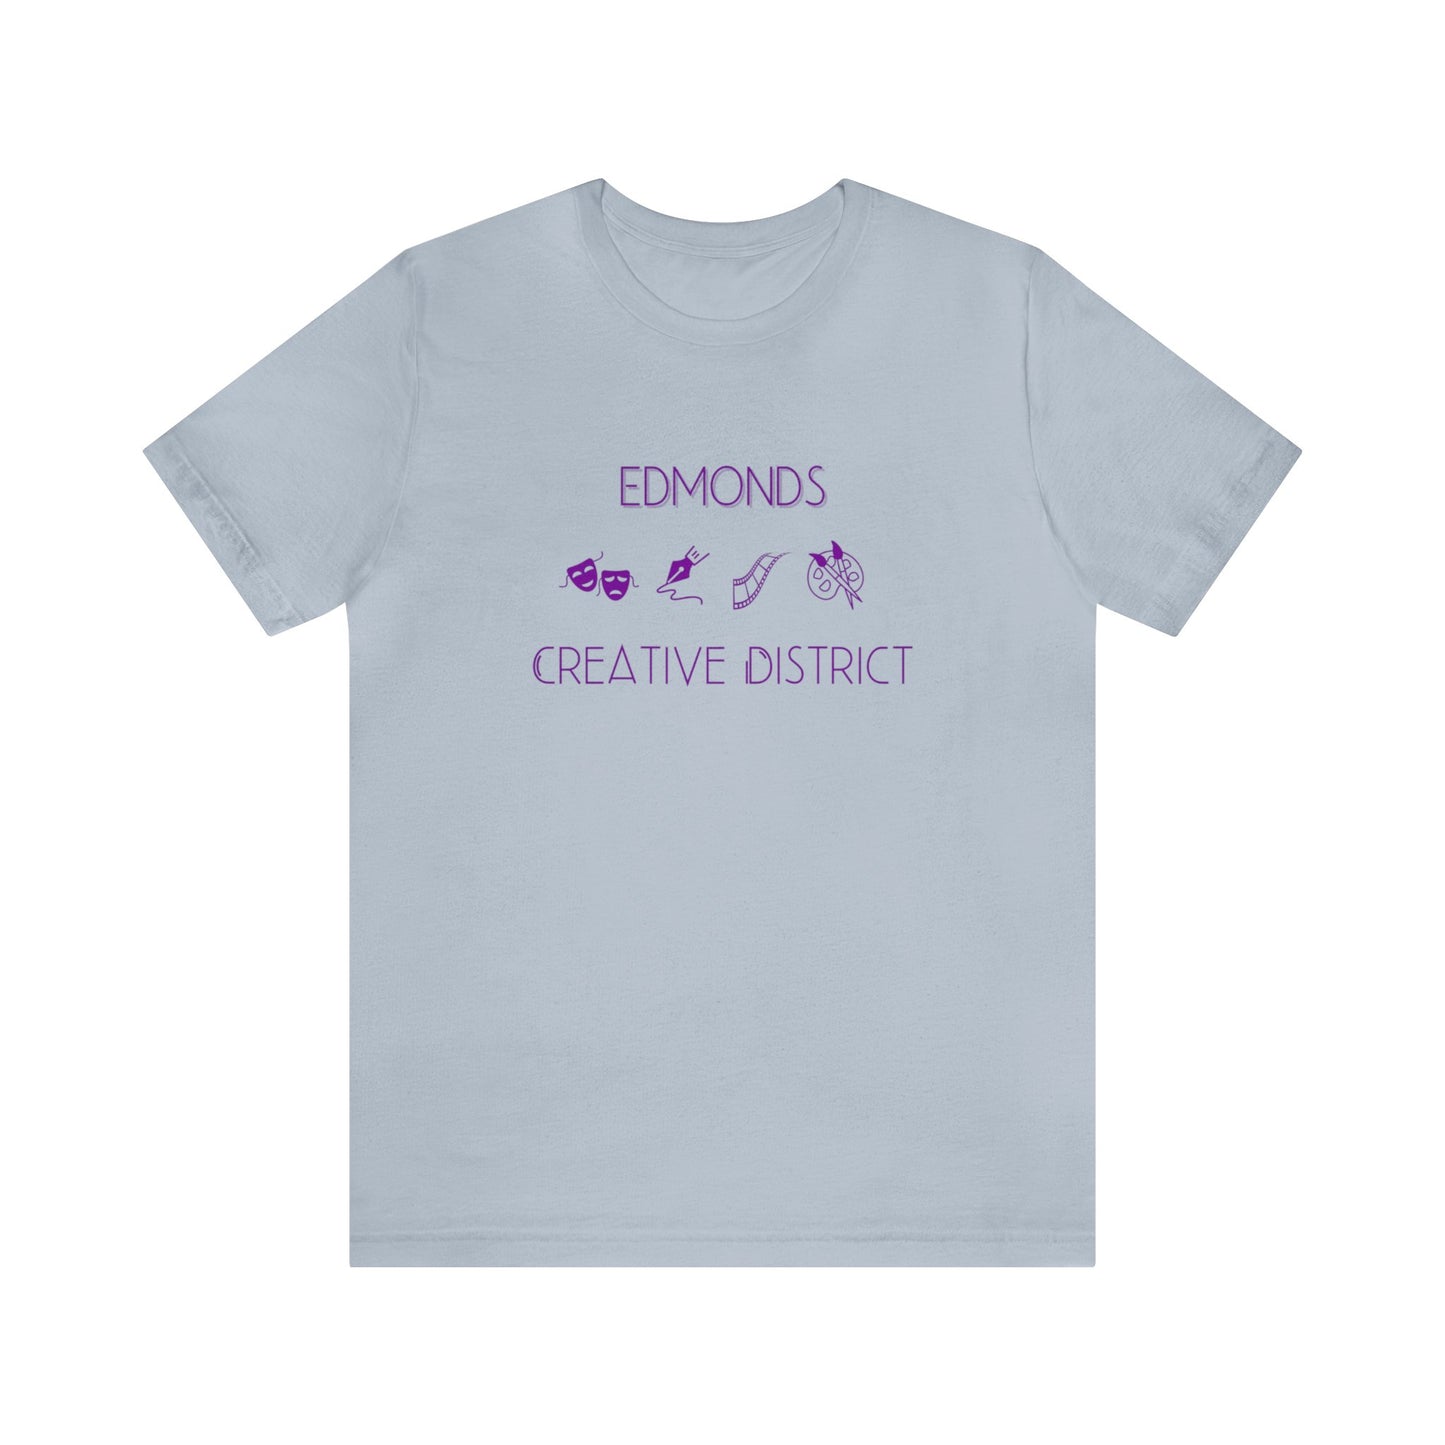 Edmonds Creative District T-shirt